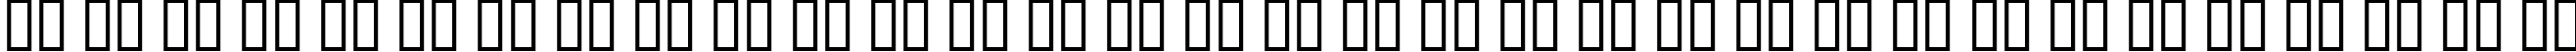 Пример написания русского алфавита шрифтом Freshbot